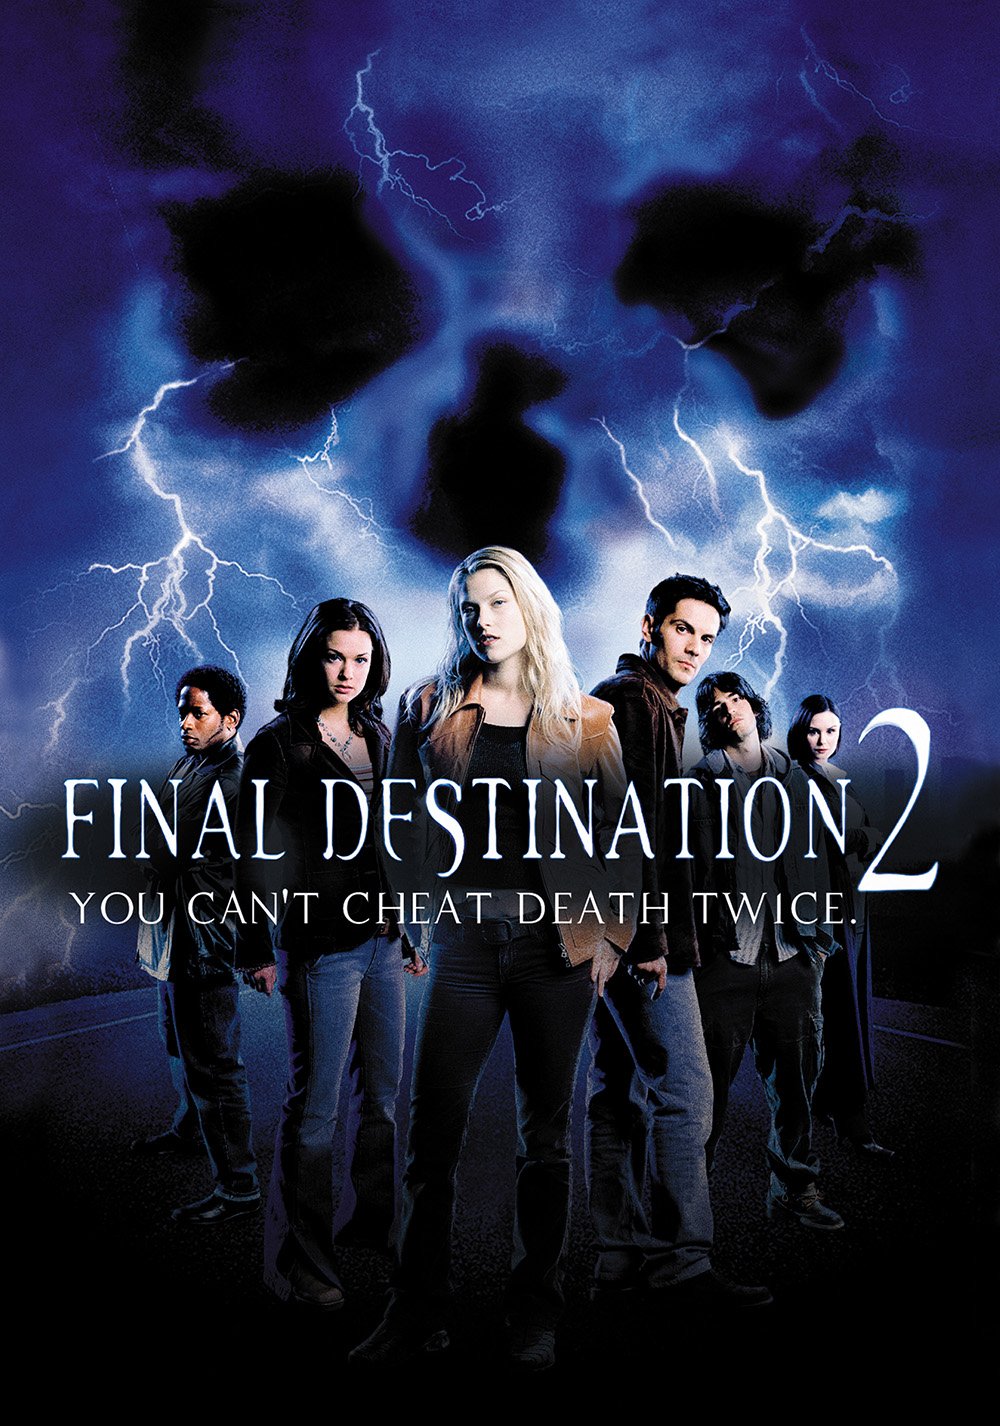 watch final destination 4 full movie free